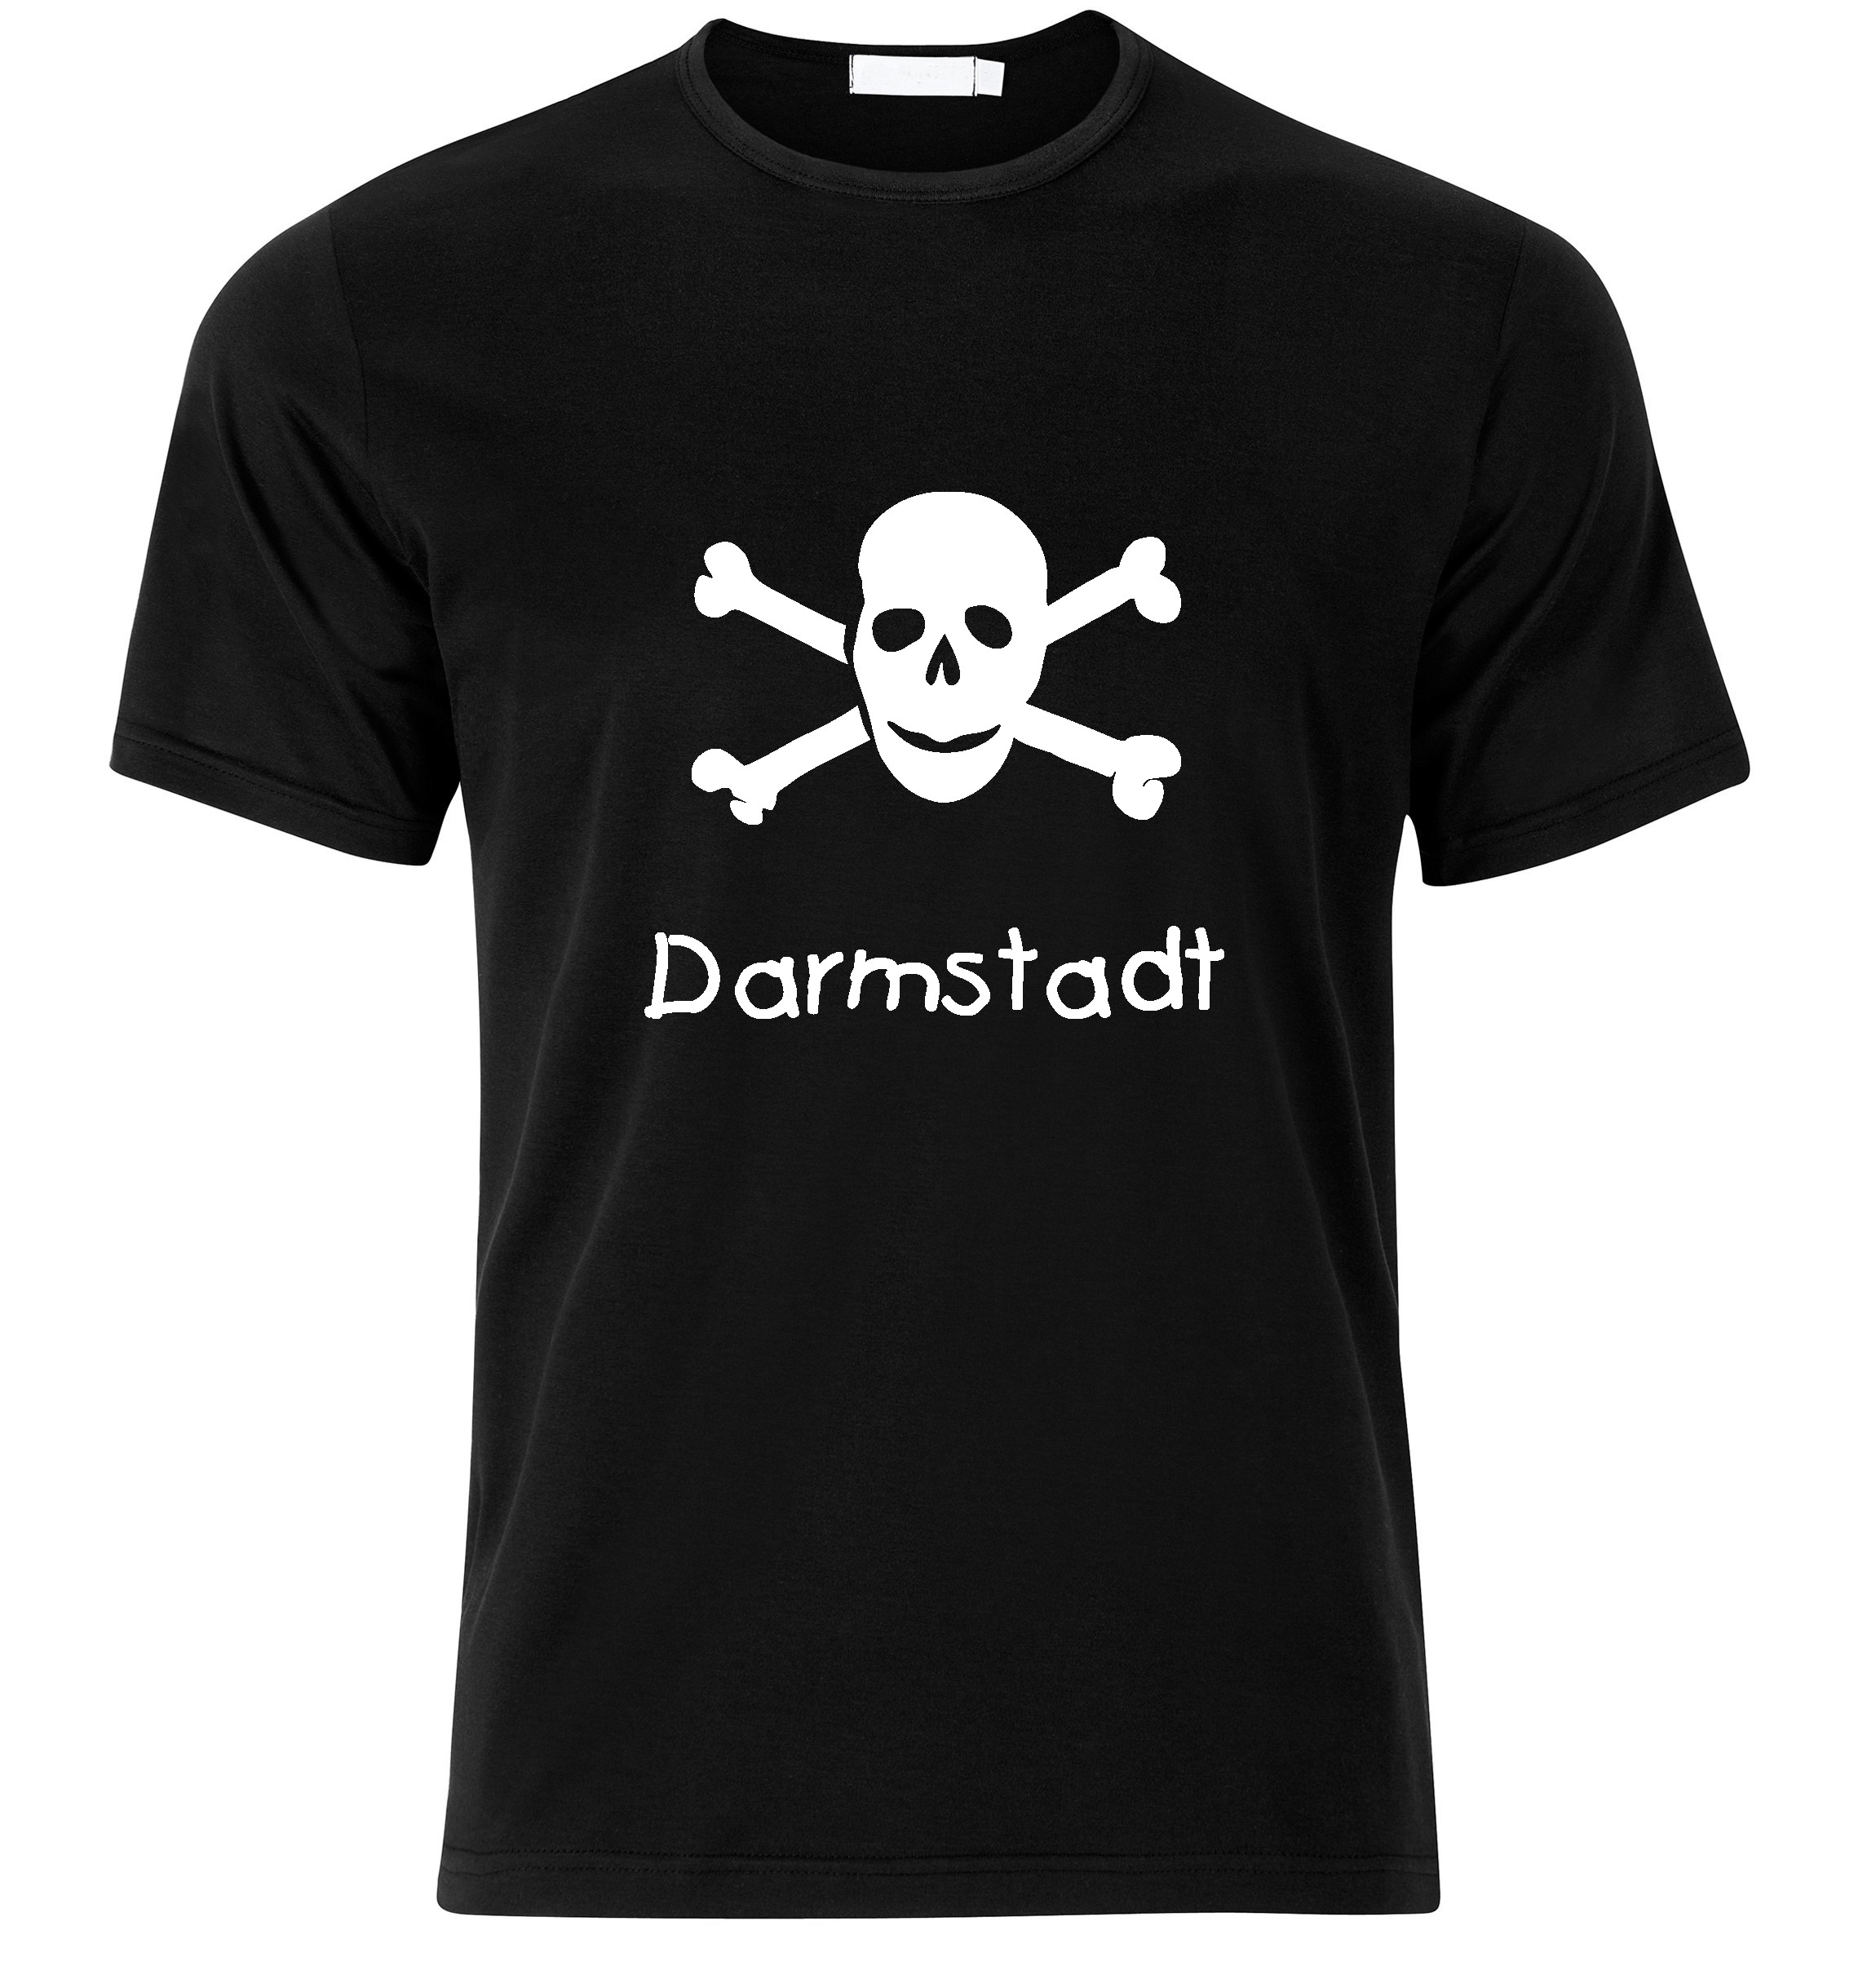 T-Shirt Darmstadt Jolly Roger, Totenkopf